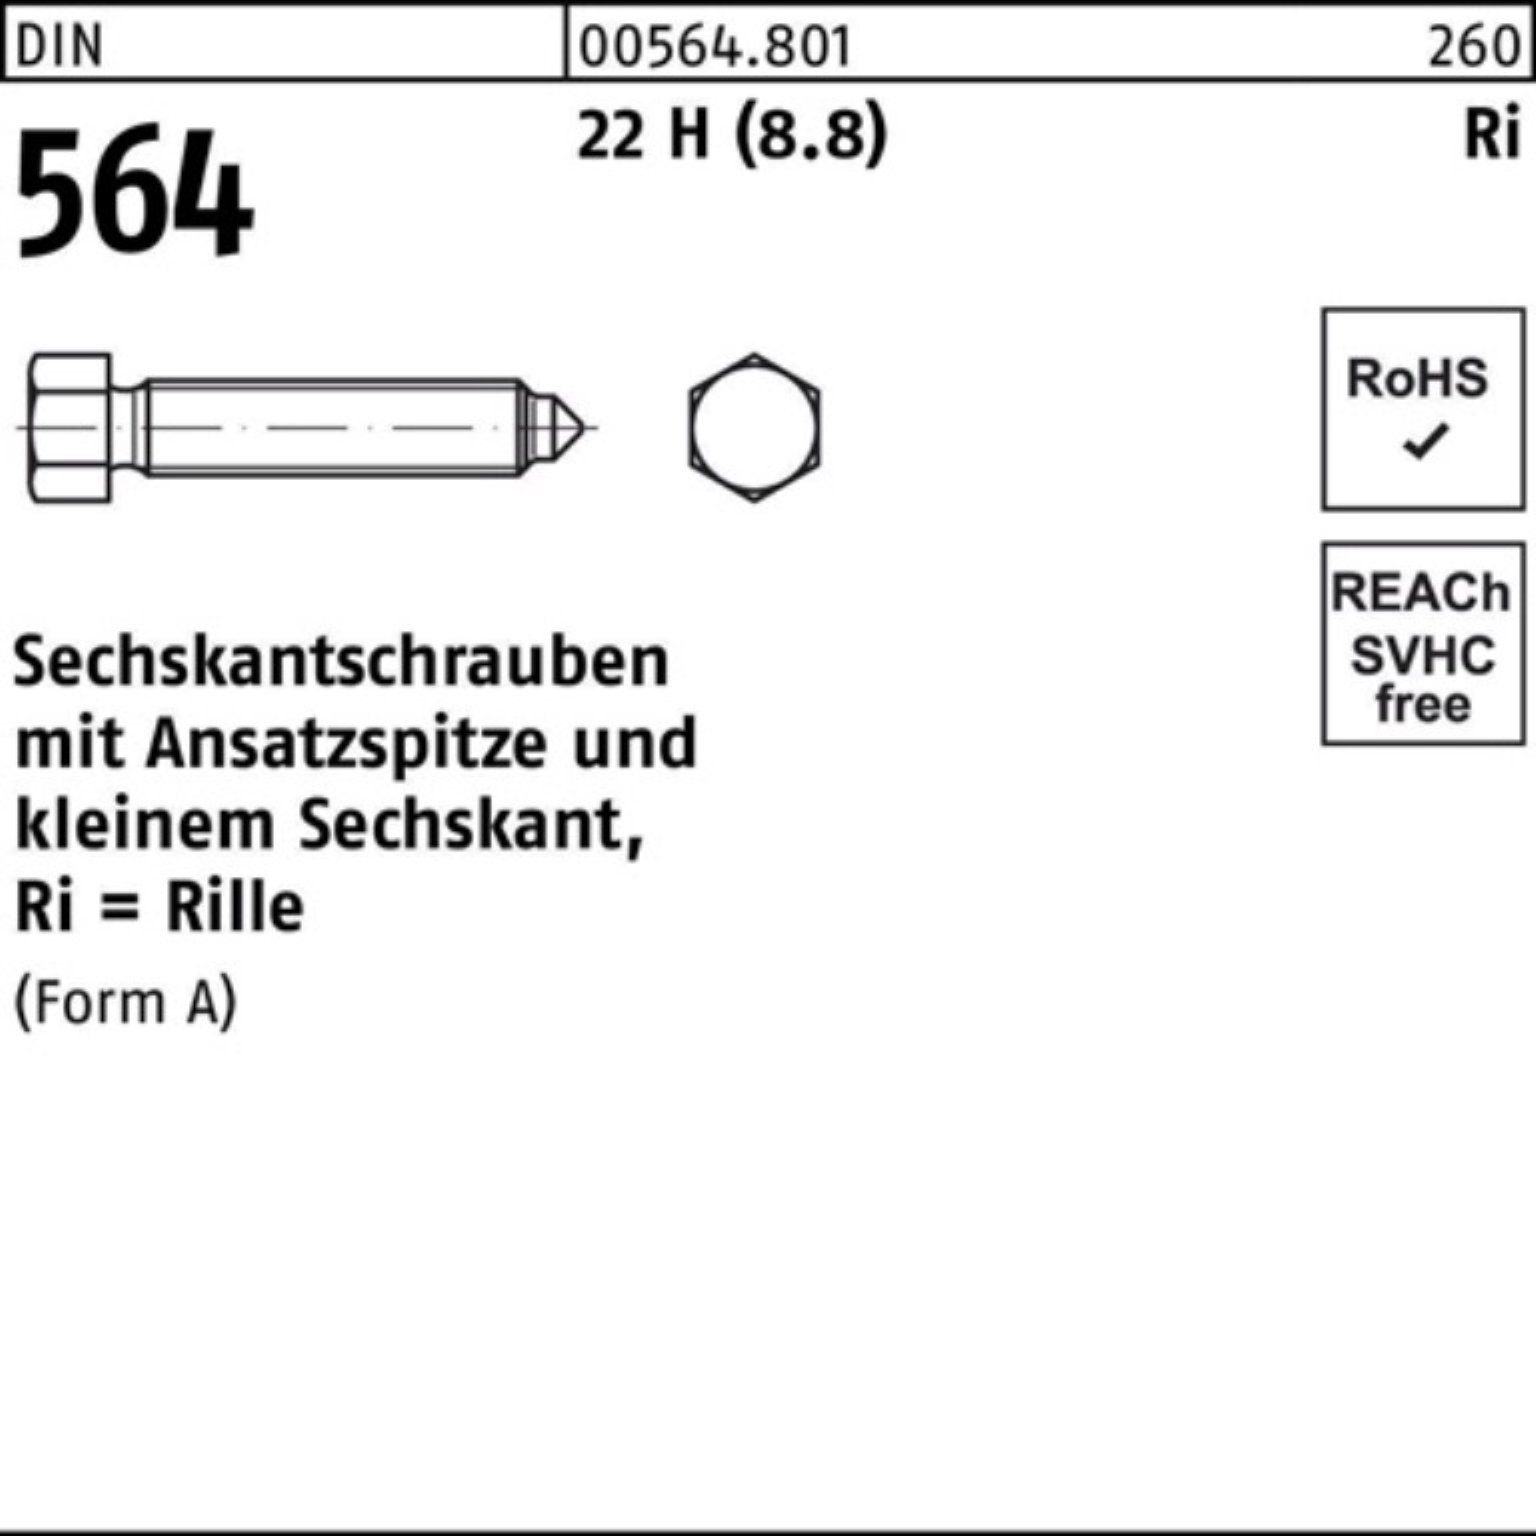 Reyher Sechskantschraube 100er Pack Sechskantschraube DIN 564 Ansatzspitze AM 10x 50 22 H (8.8)